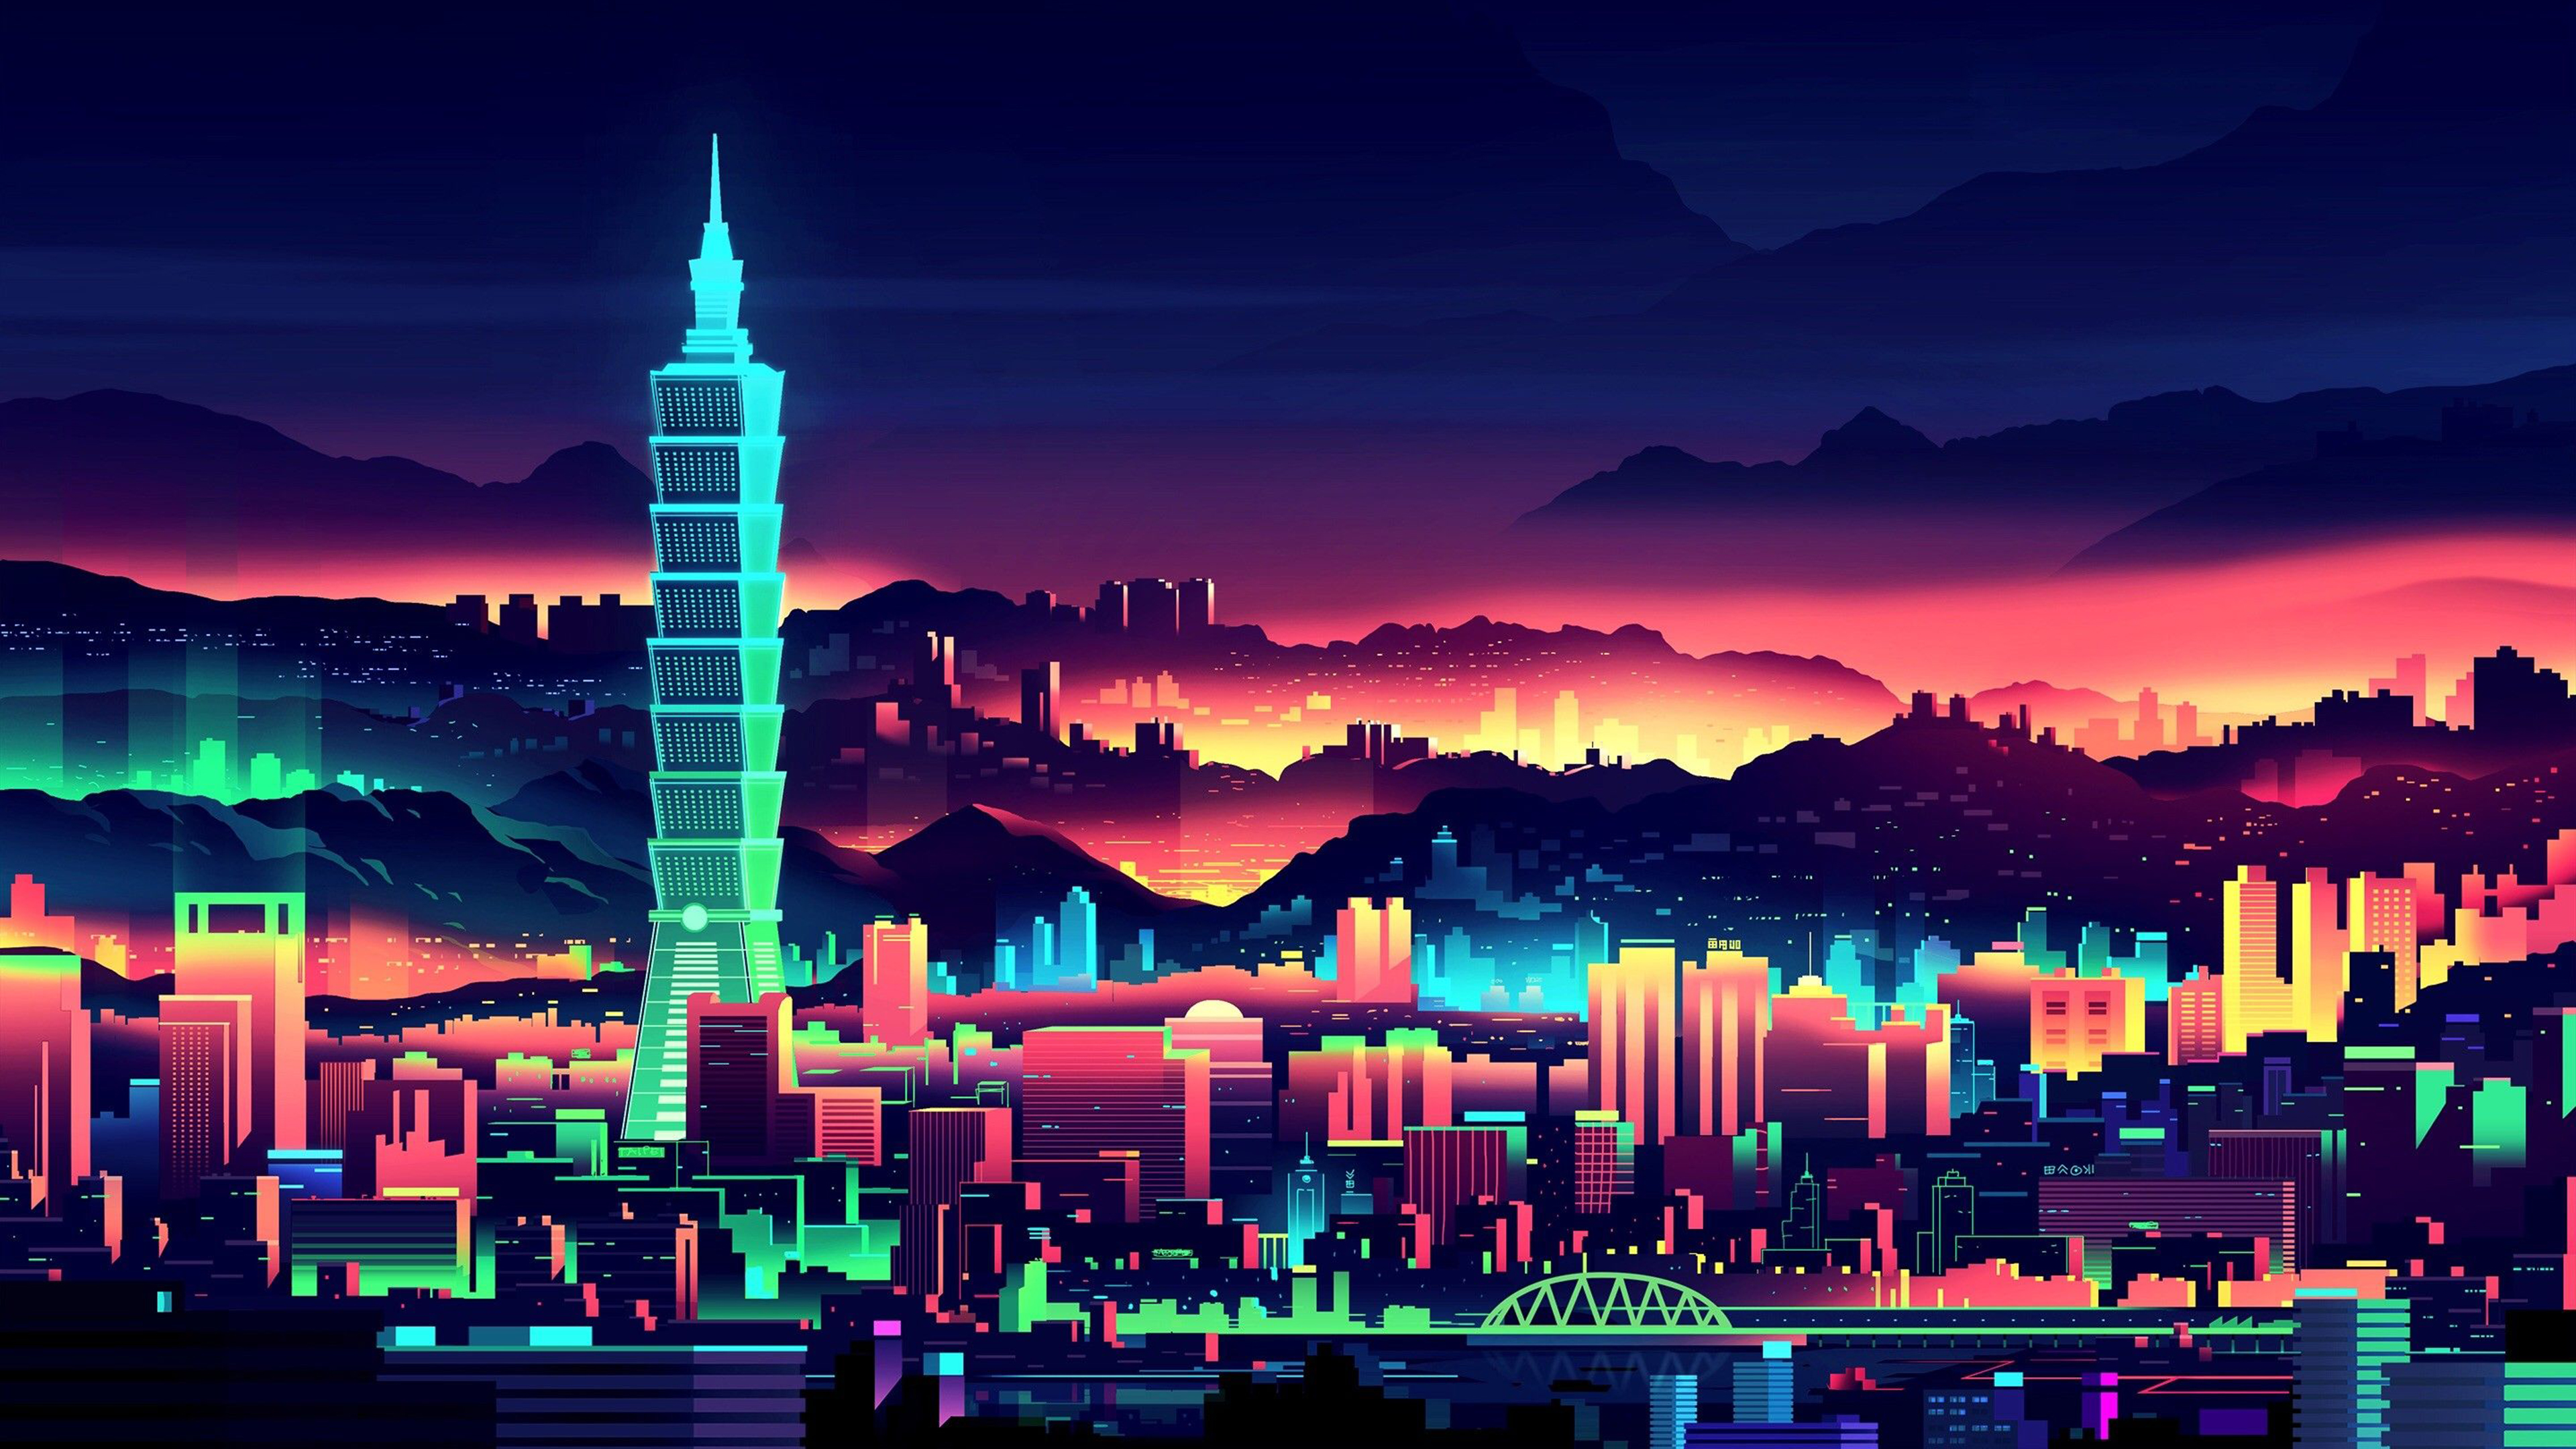 Bạn đang muốn tìm hình nền đẹp cho máy tính của mình? Hãy truy cập vào trang web của chúng tôi và tải về những hình nền Neon City với độ phân giải 4K. Đảm bảo bạn sẽ khiến mọi người ngưỡng mộ với phong cách trẻ trung và sành điệu của mình!